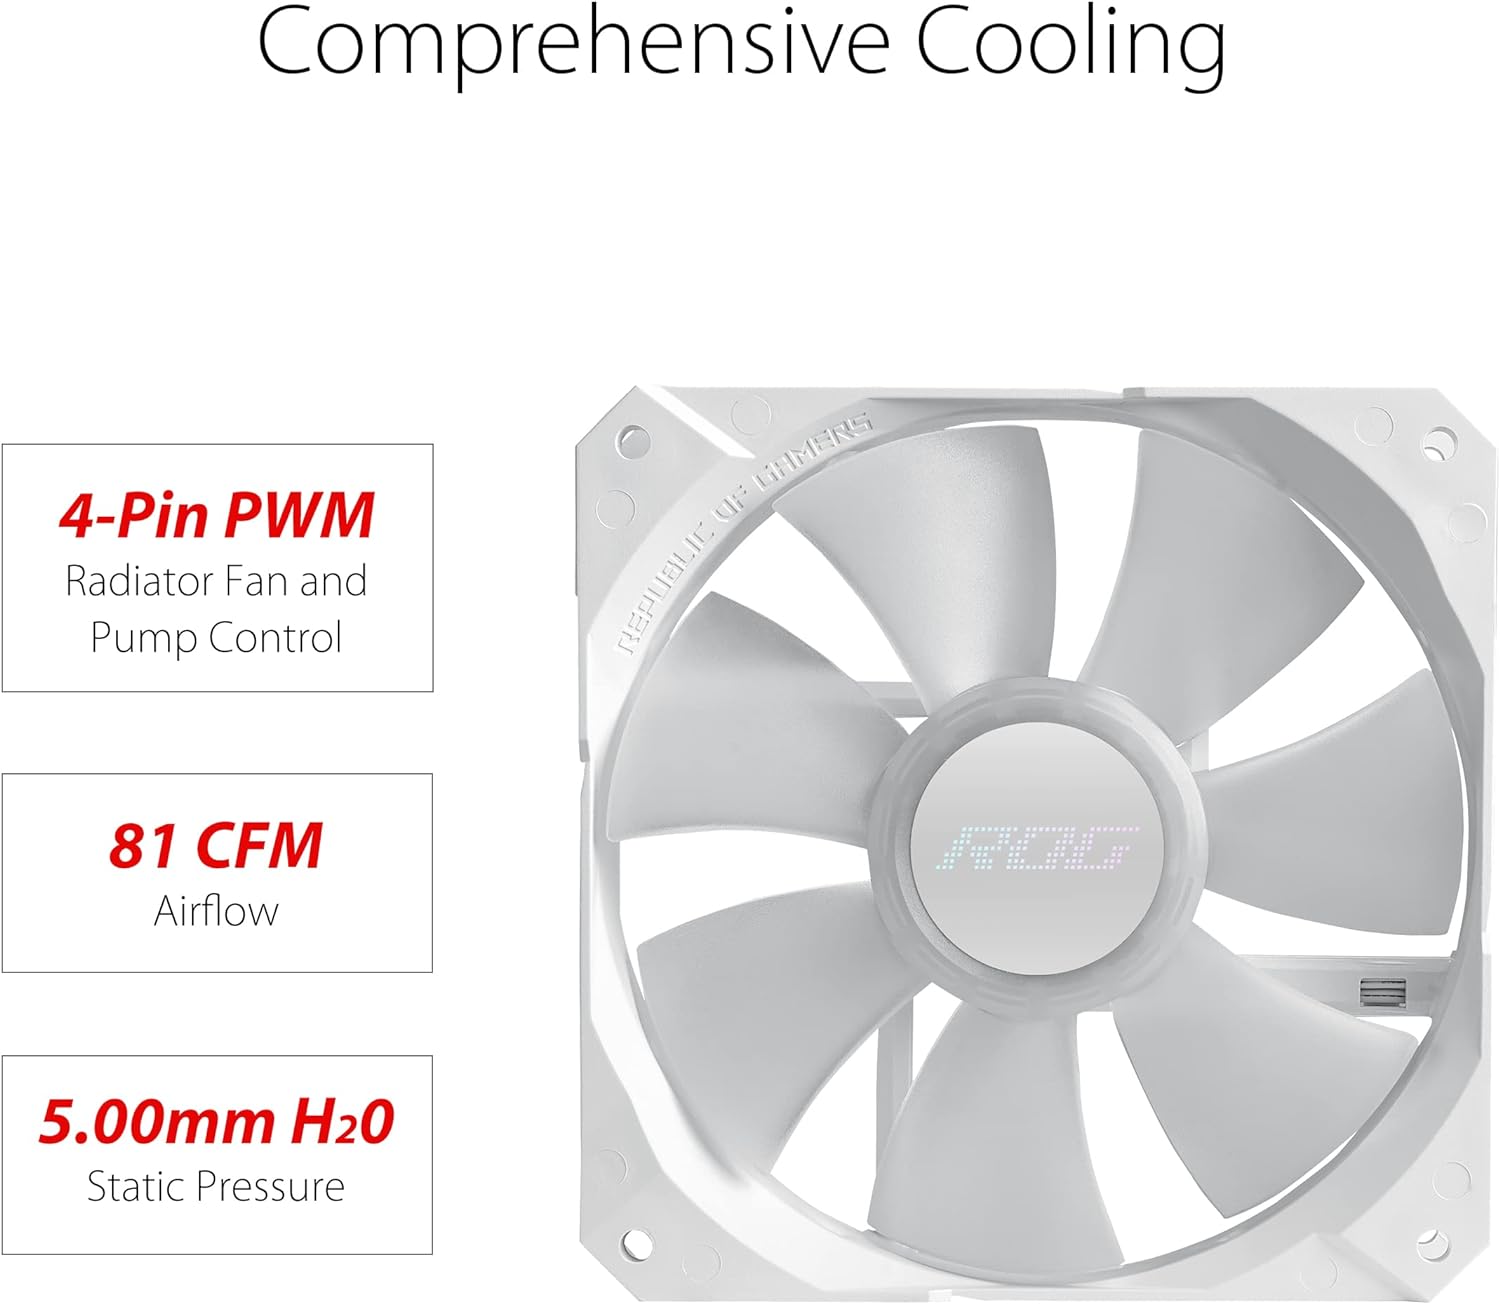 ASUS ROG Strix LC II 240 ARGB White AIO Liquid CPU Cooler - Optimal airflow and static pressure, stylish design. 0197105120280